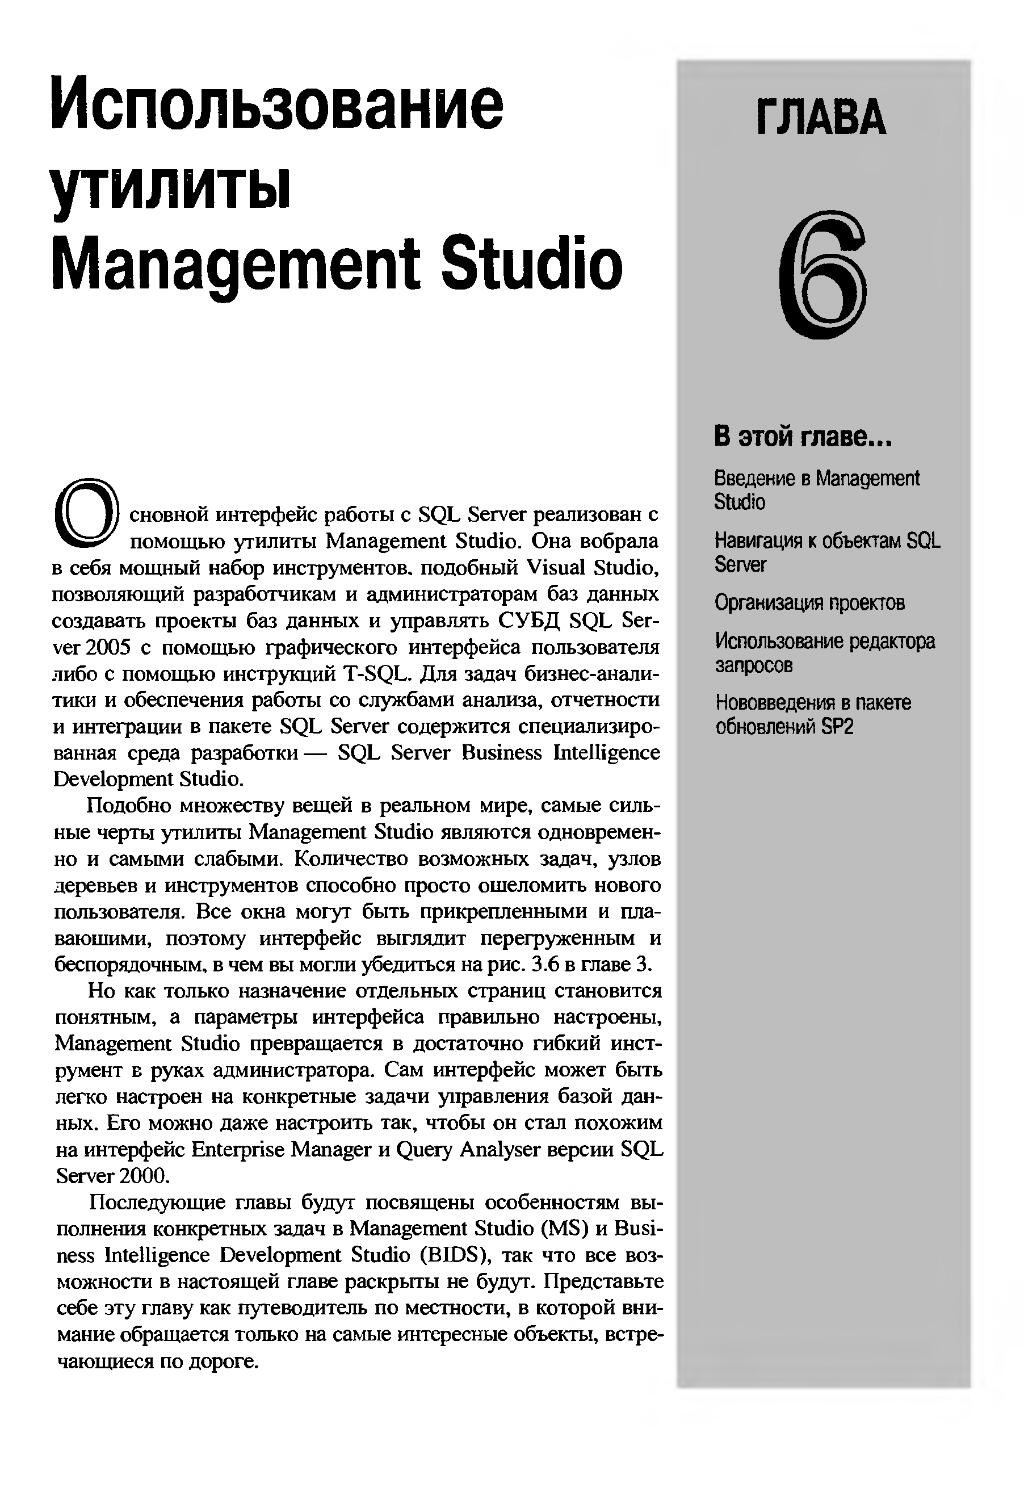 ГЛАВА 6. Использование утилиты Management Studio